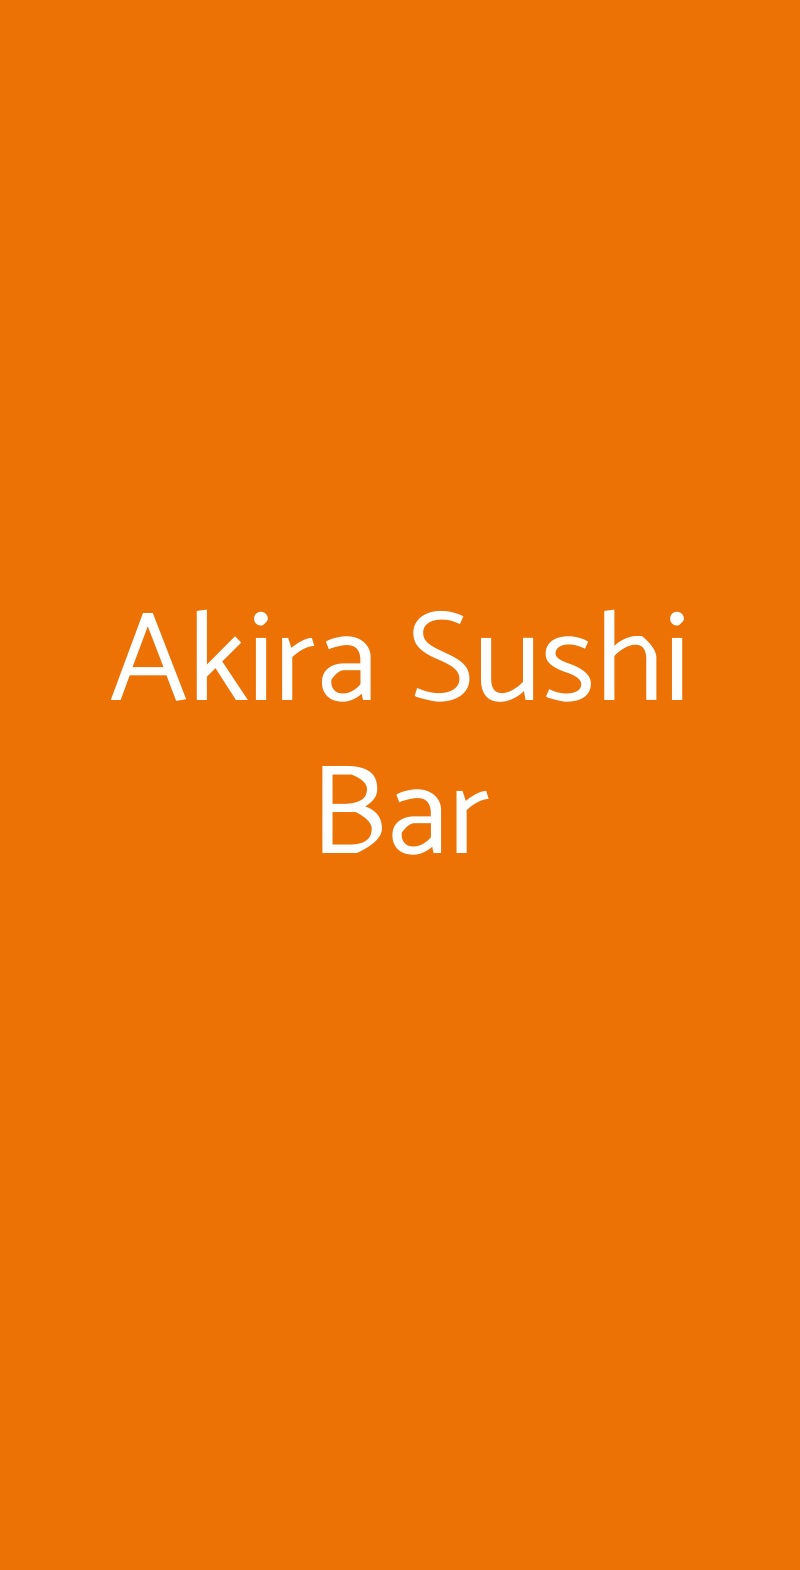 Akira Sushi Bar Milano menù 1 pagina